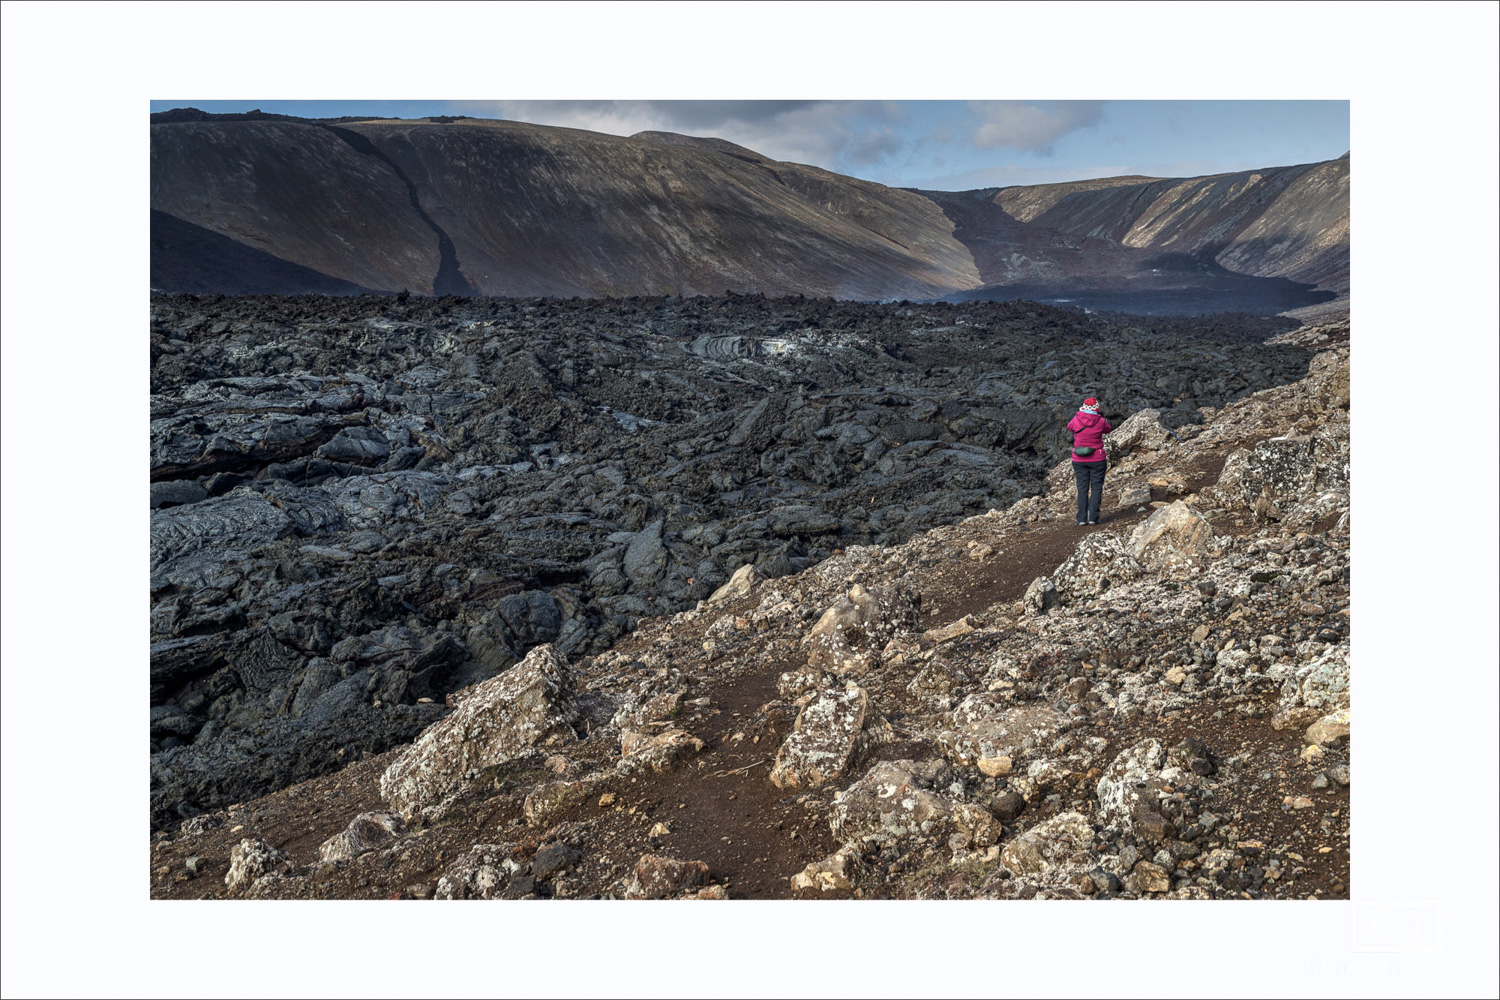 Am letzten Tag unserer Fotoreise haben wie - fast schon traditionell - einen Abstecher zum jüngsten Vulkan Islands gemacht: dem Fa­gra­dalsfjall. Der Ausbruch im März 2021 hat eine Menge Lava produziert, die ausgedehnten Lavafelder rauchen immer noch.